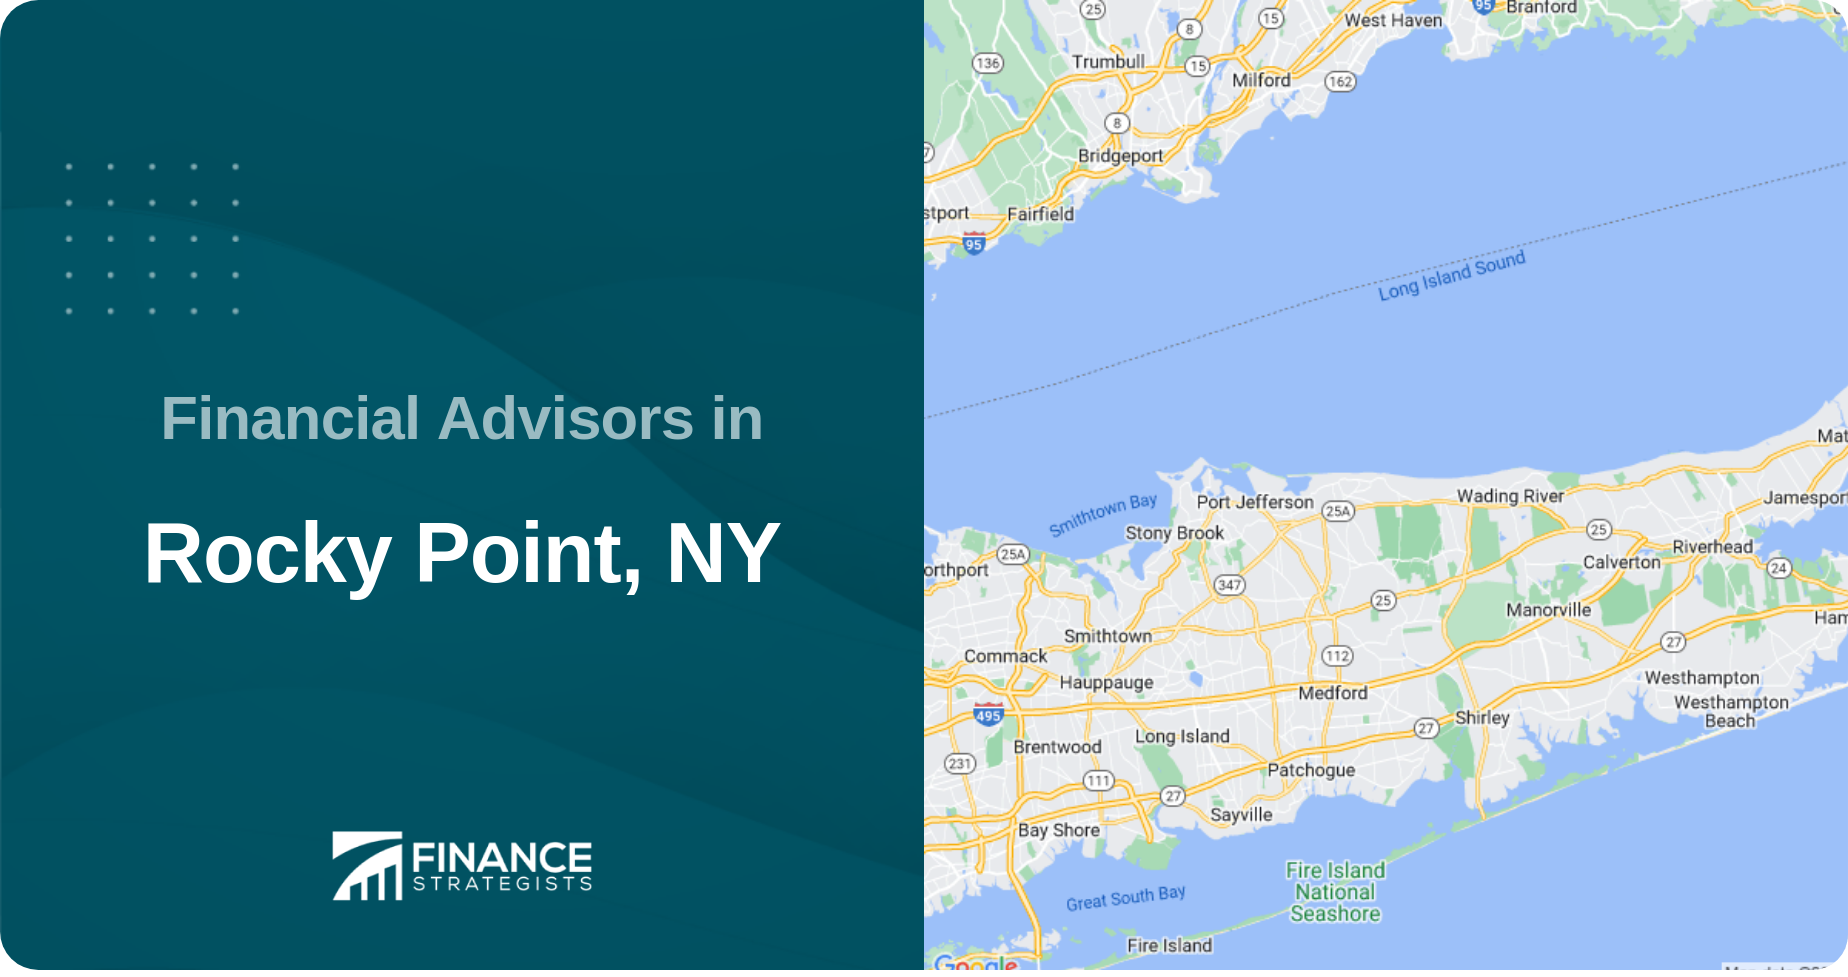 Financial Advisors in Rocky Point, NY